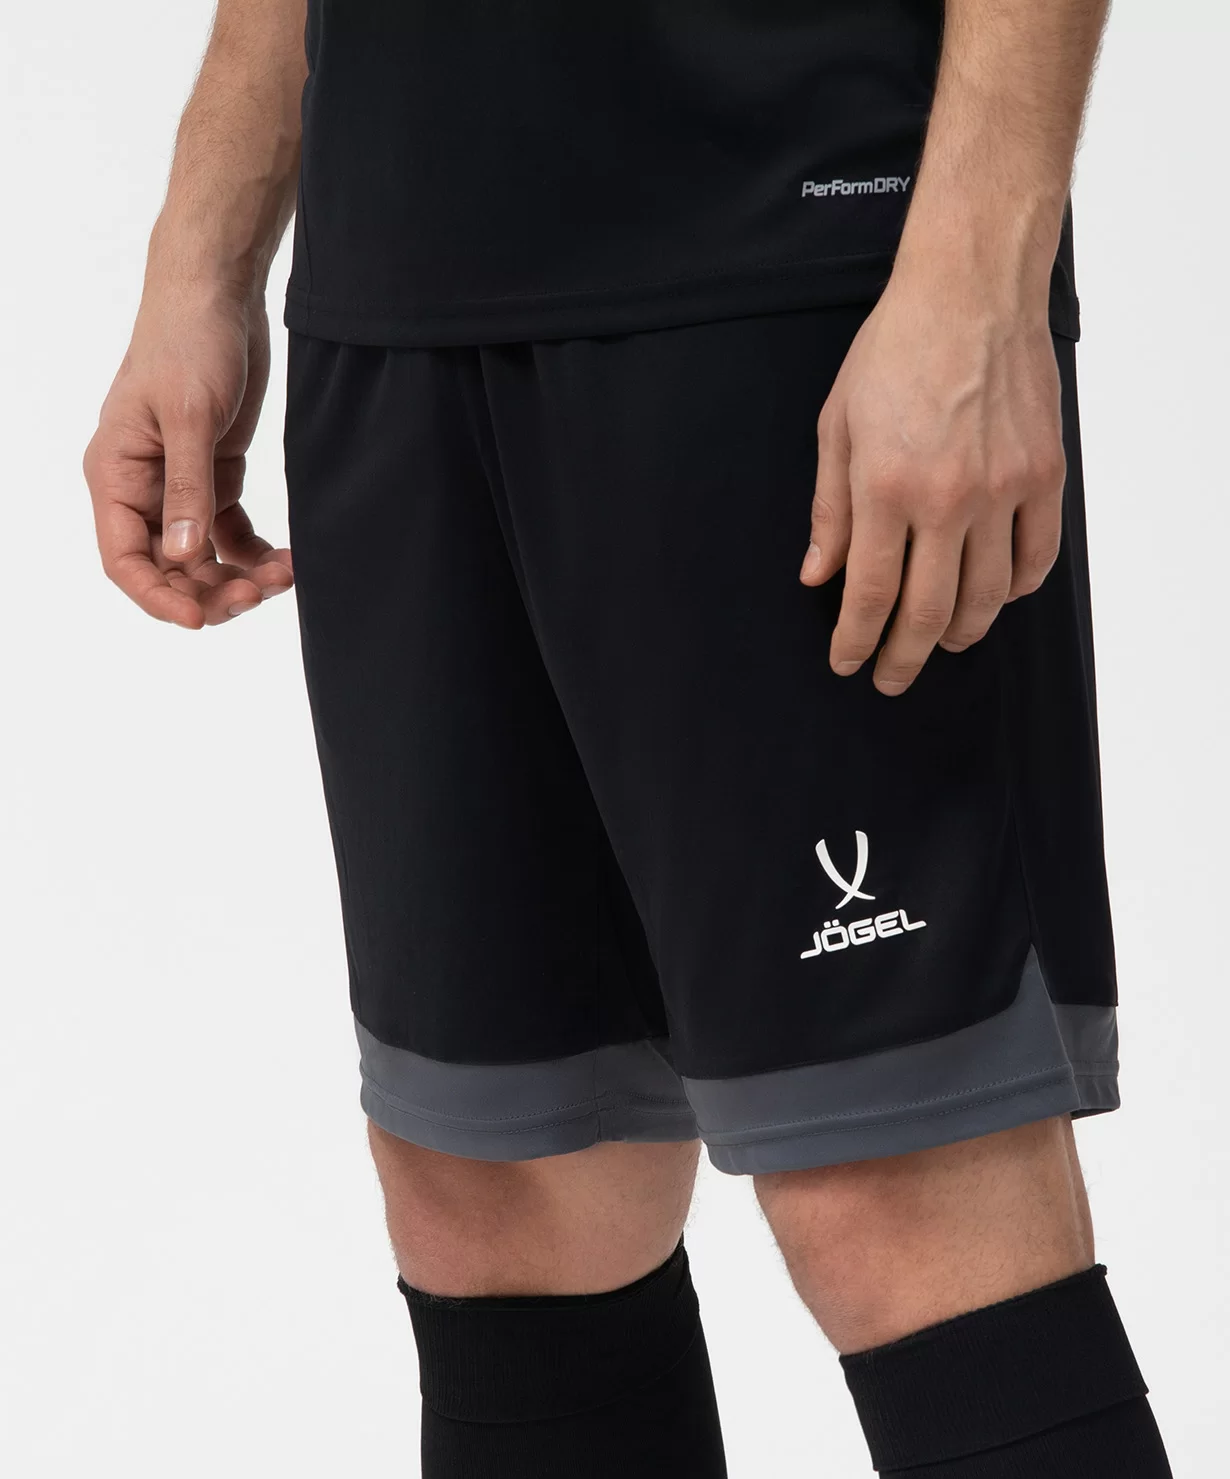 Фото Шорты игровые DIVISION PerFormDRY Union Shorts, черный/темно-серый/белый со склада магазина СпортСЕ